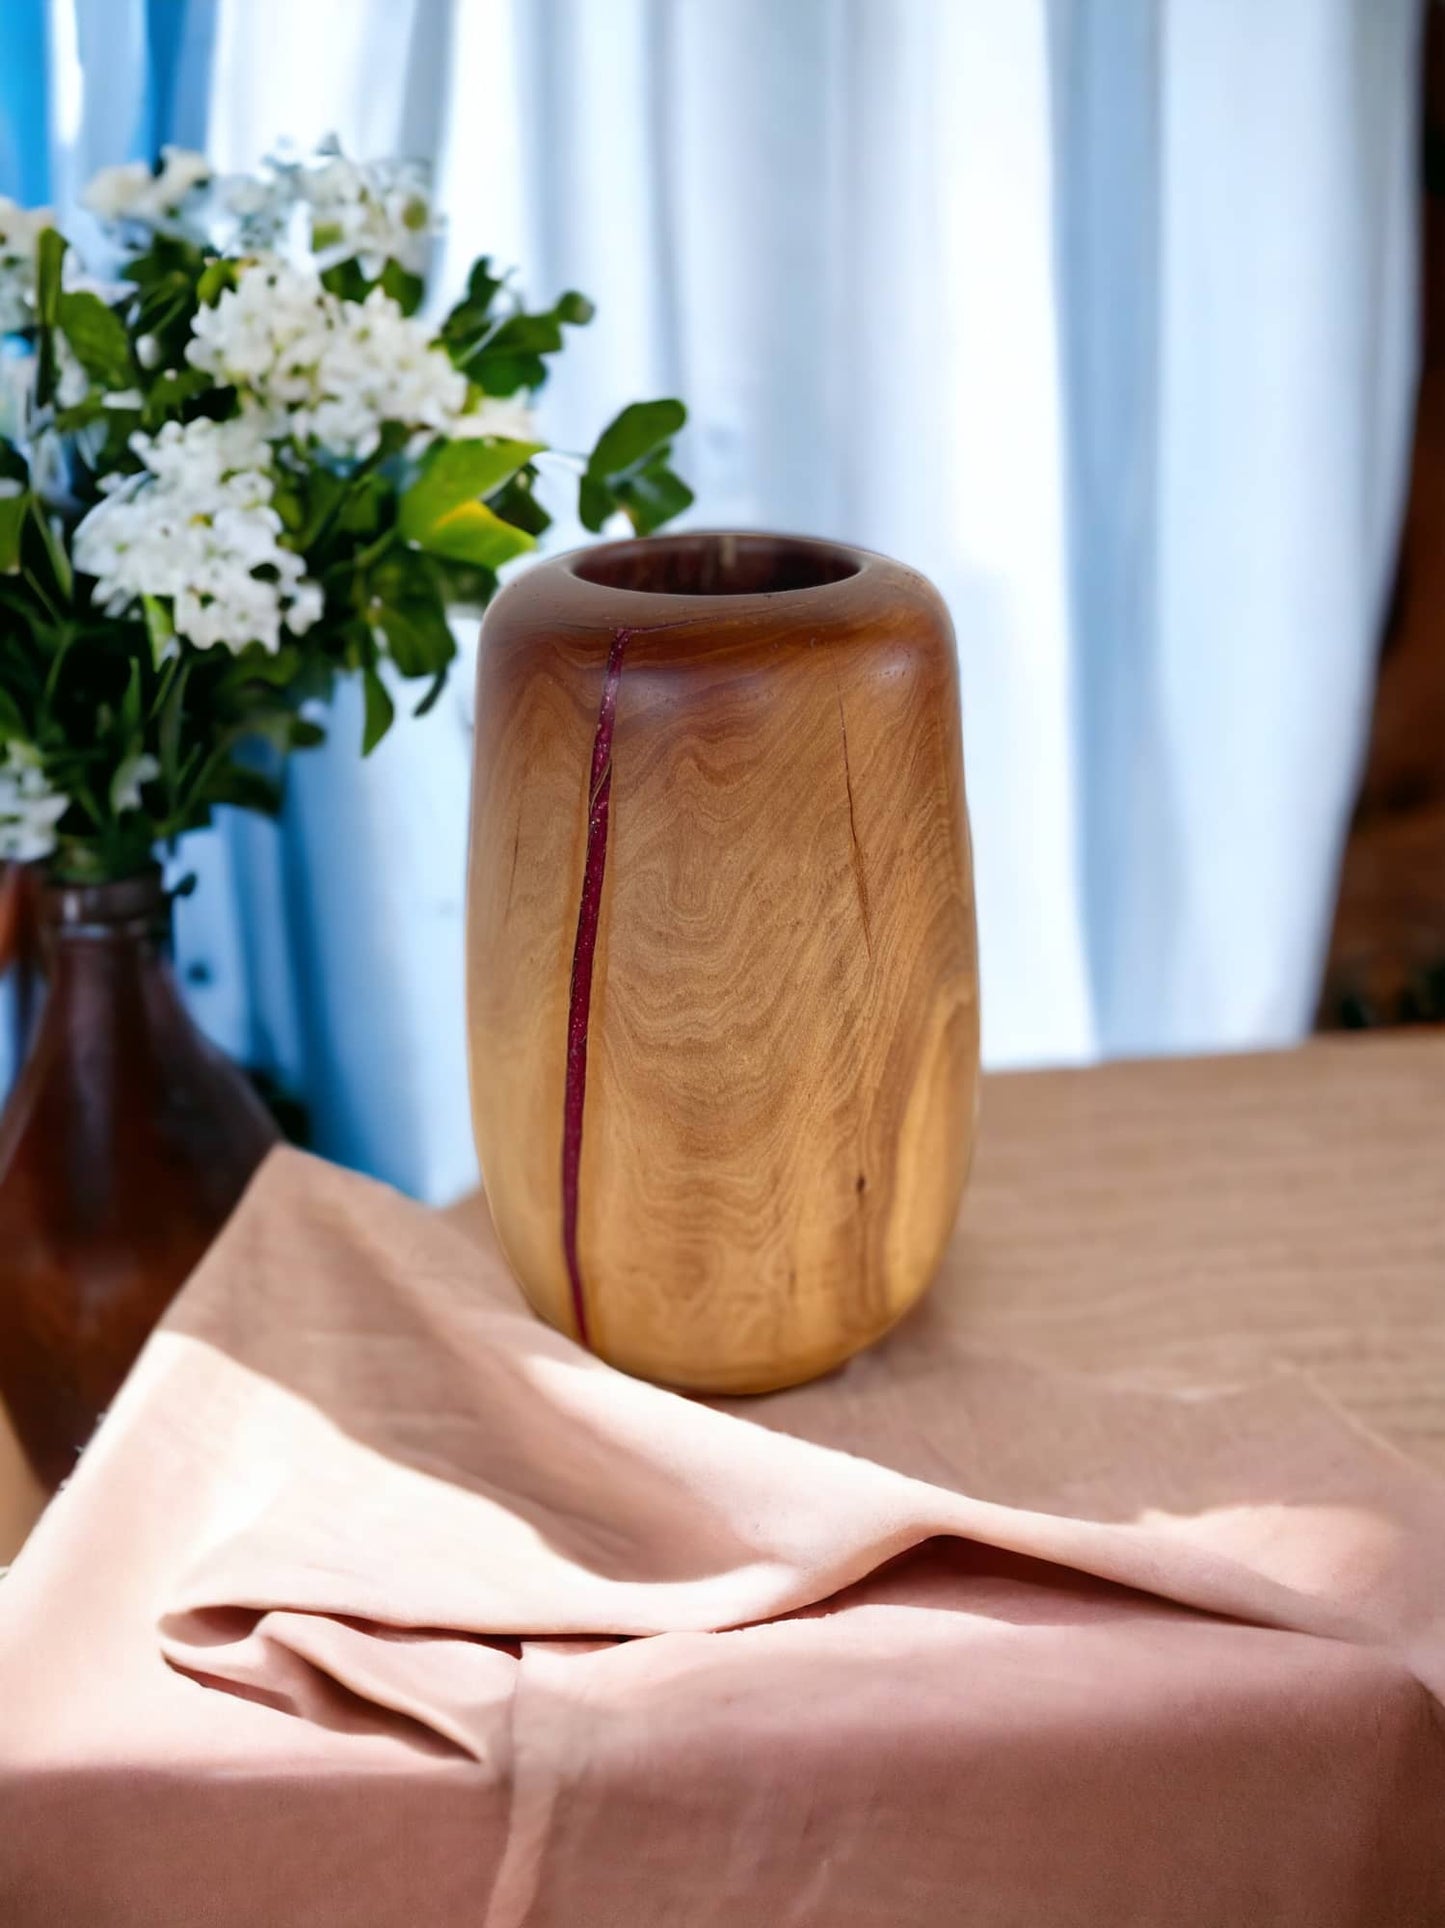 Natural beauty and charm. Manzanita Wood vase with resin. 8”H x 4.5”Dia